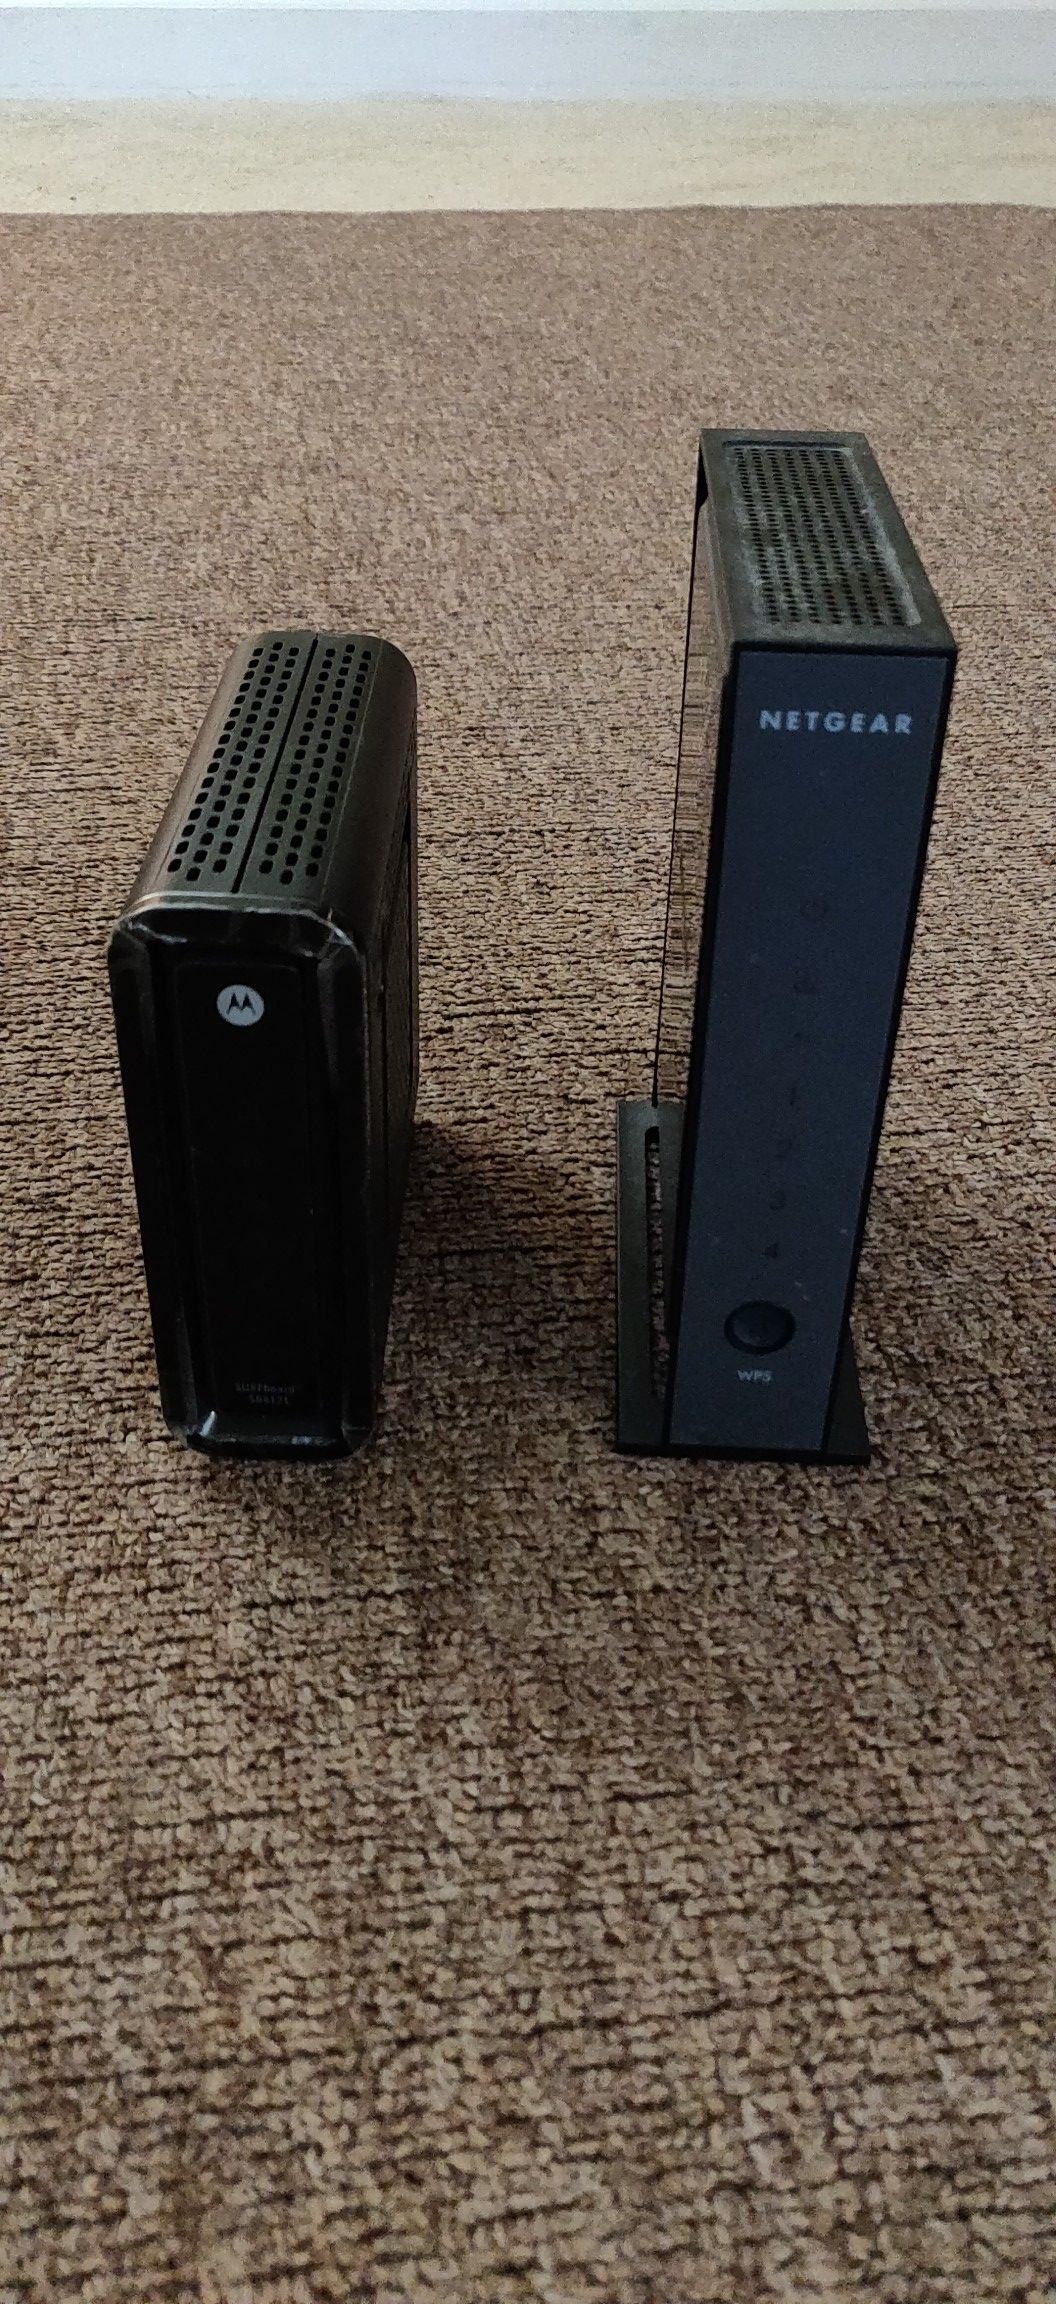 Motorola modem and netgear router